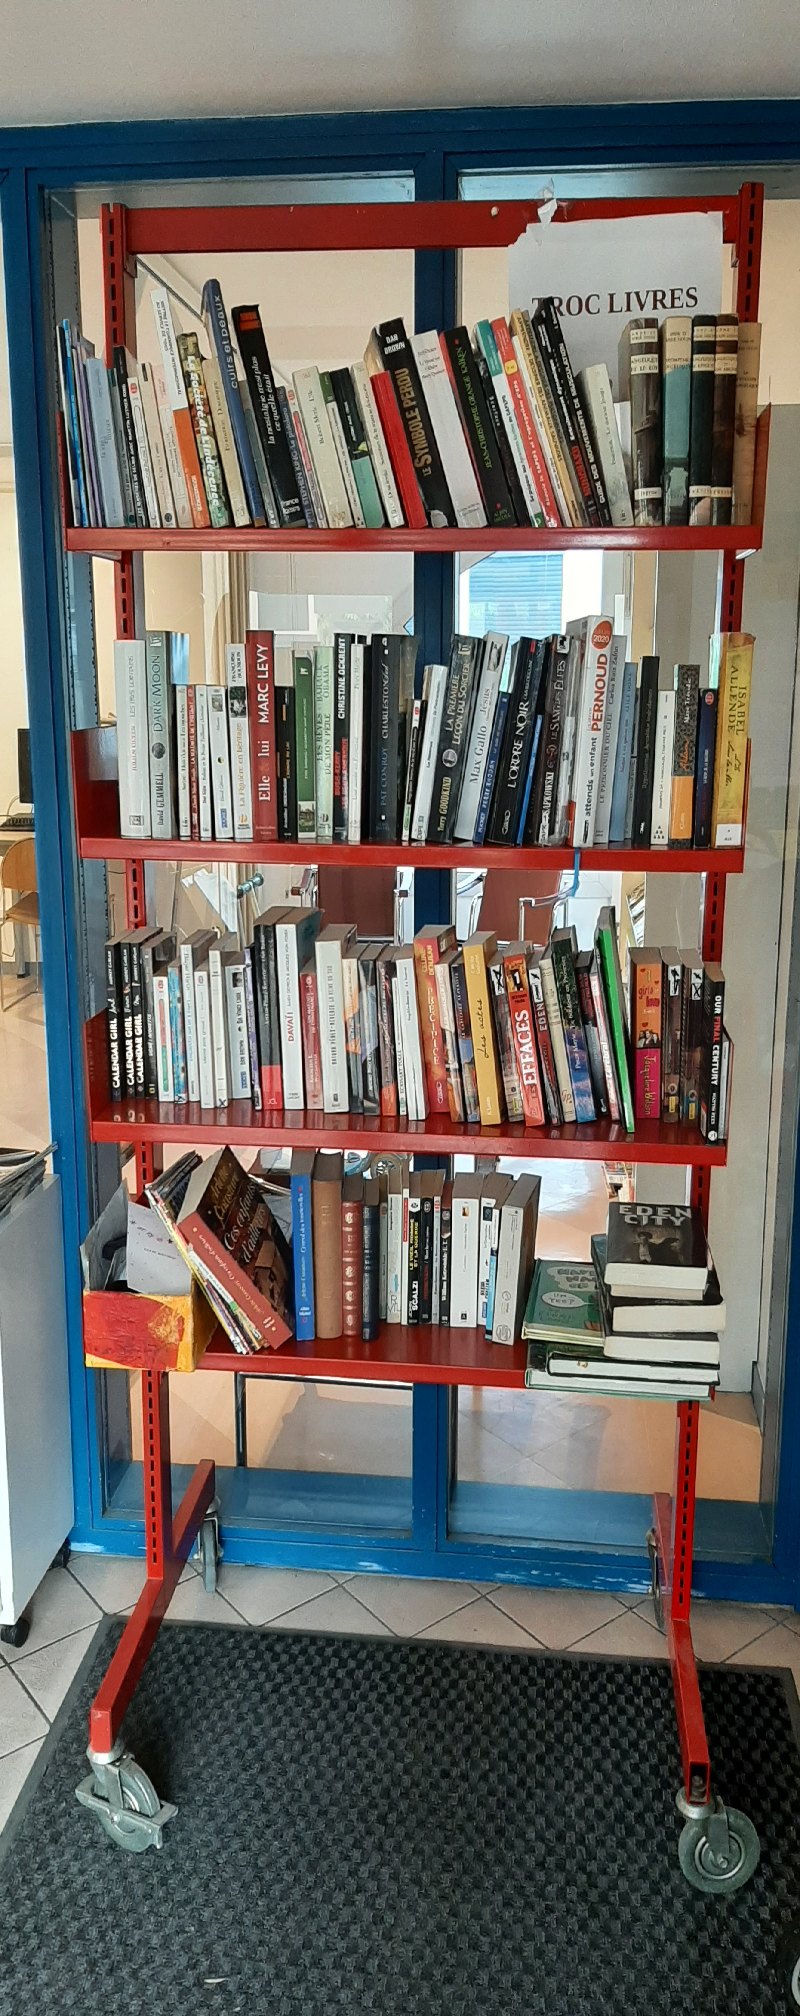 Délivrez - Boite à livres (Gières, France)